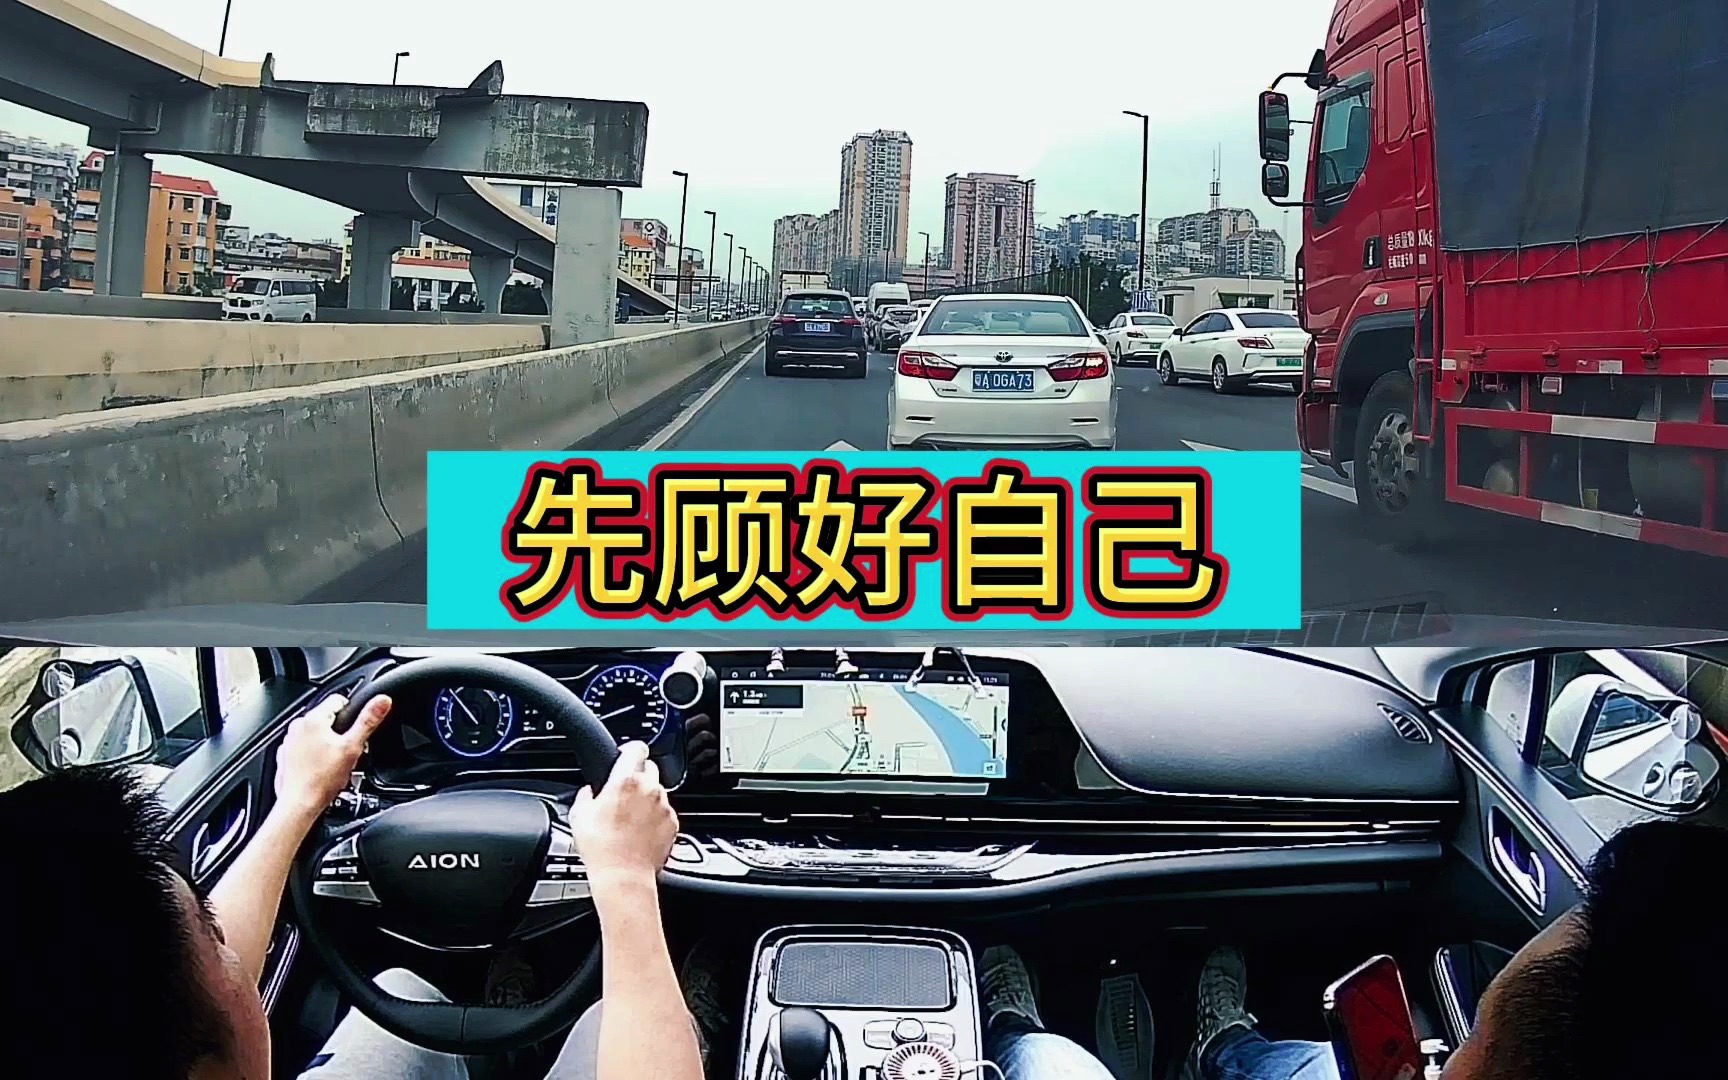 方向，打多少要知道-广州新起点陪驾陪练-广州新起点陪驾陪练-哔哩哔哩视频